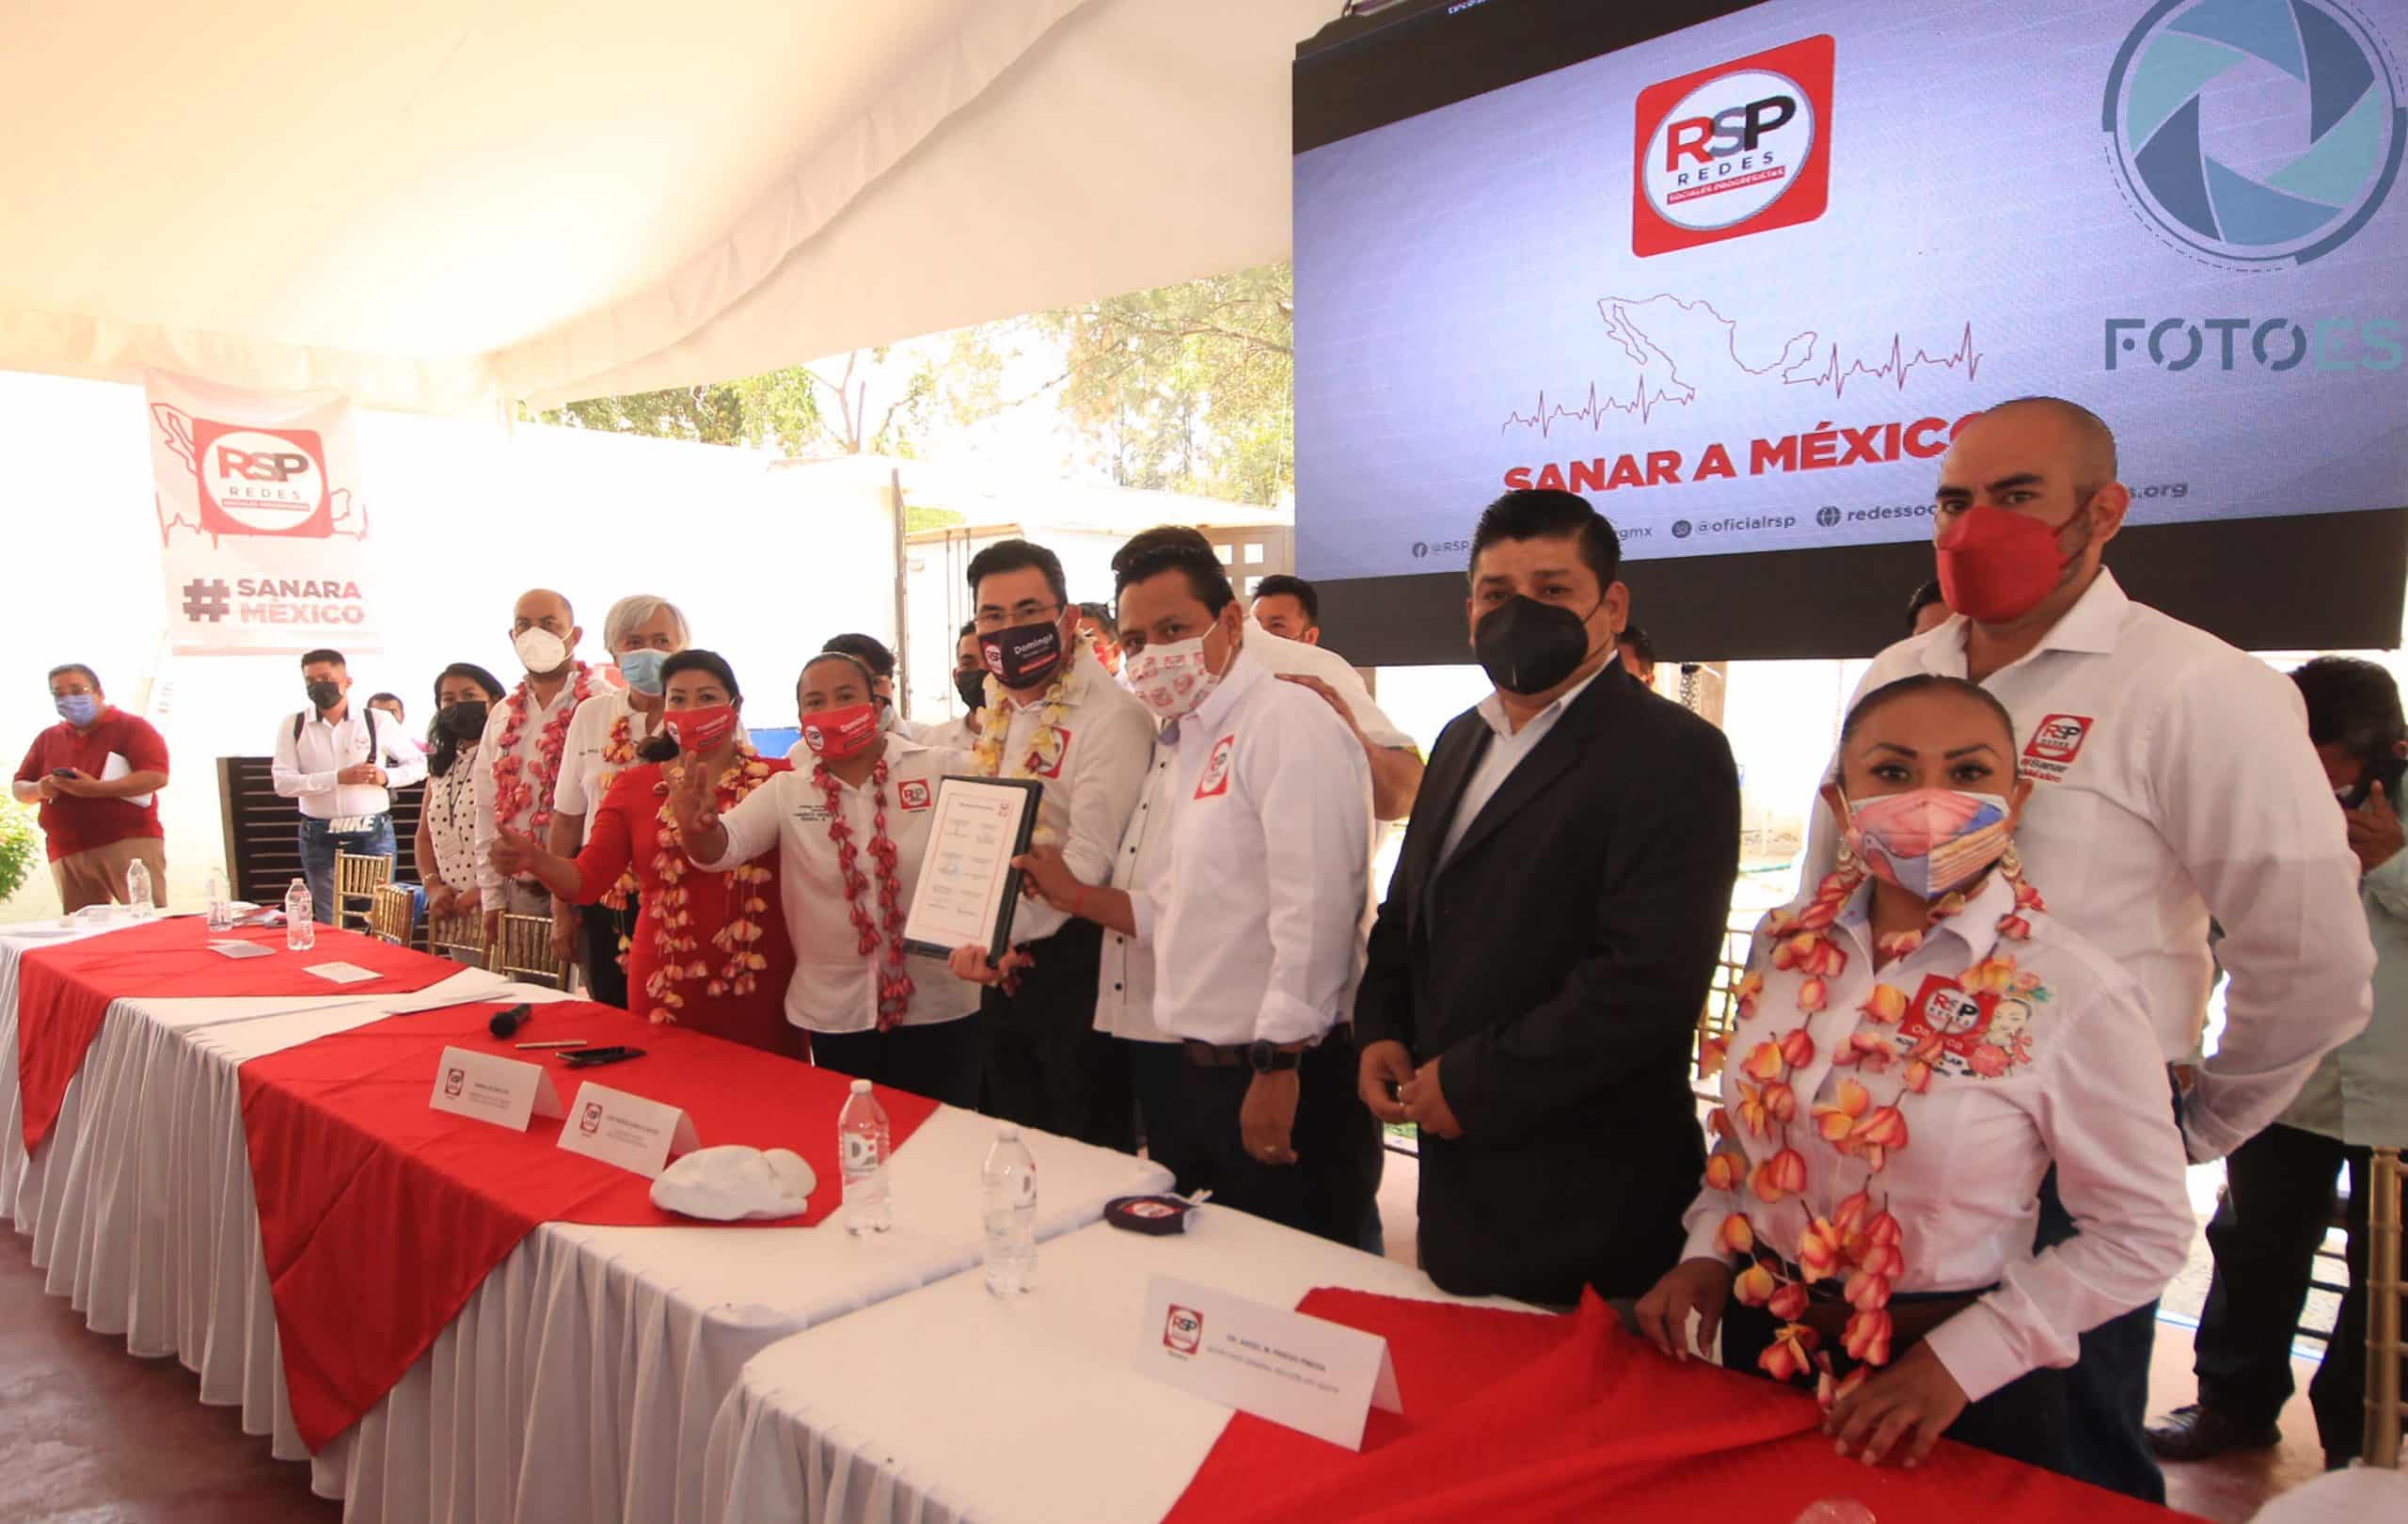 Firman “Pacto por la Salud” dirigentes y candidatos del partido RSP